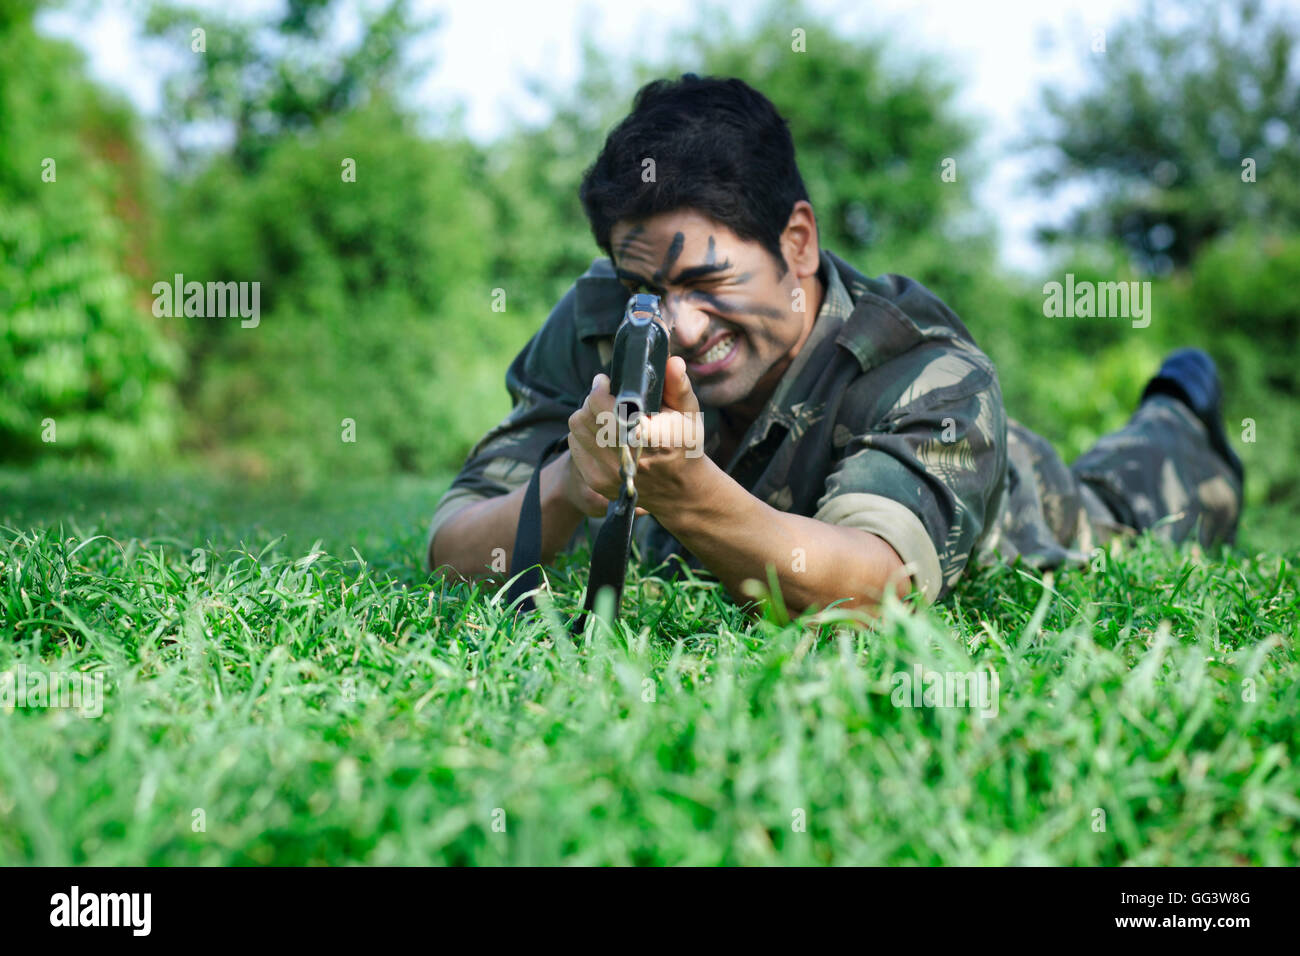 Soldato dell'esercito mirando con un fucile sdraiati sull'erba Foto Stock